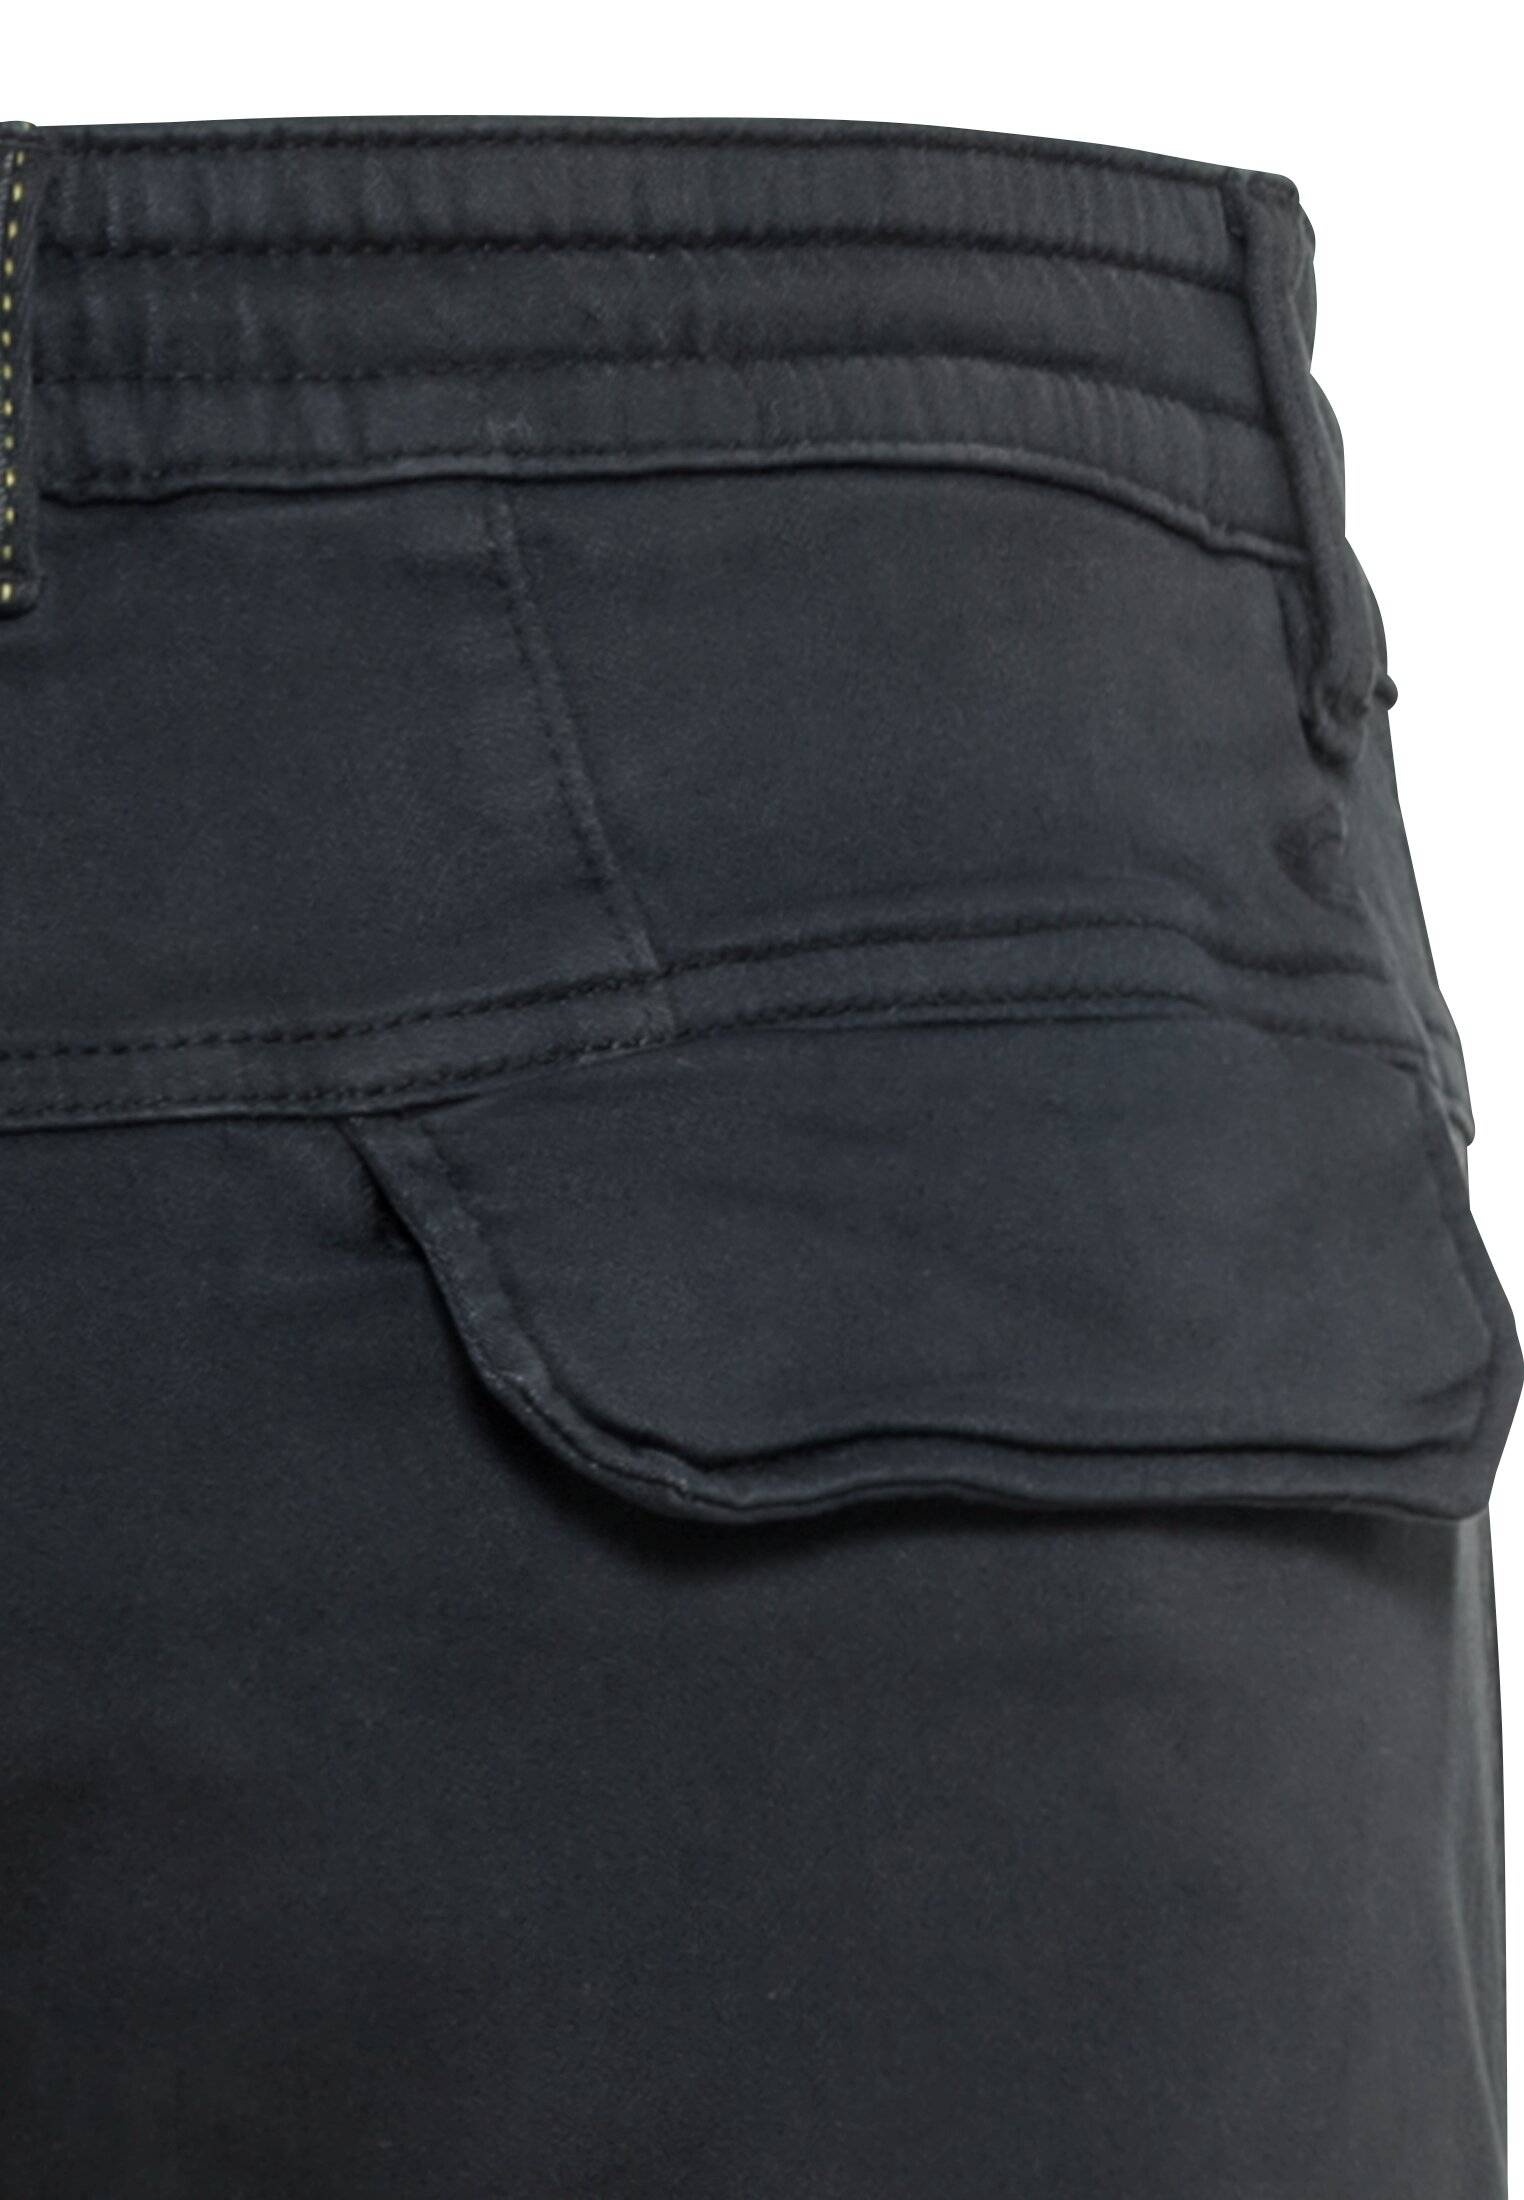 Мужские брюки Camel Active, серые, цвет серый, размер 36 - фото 4